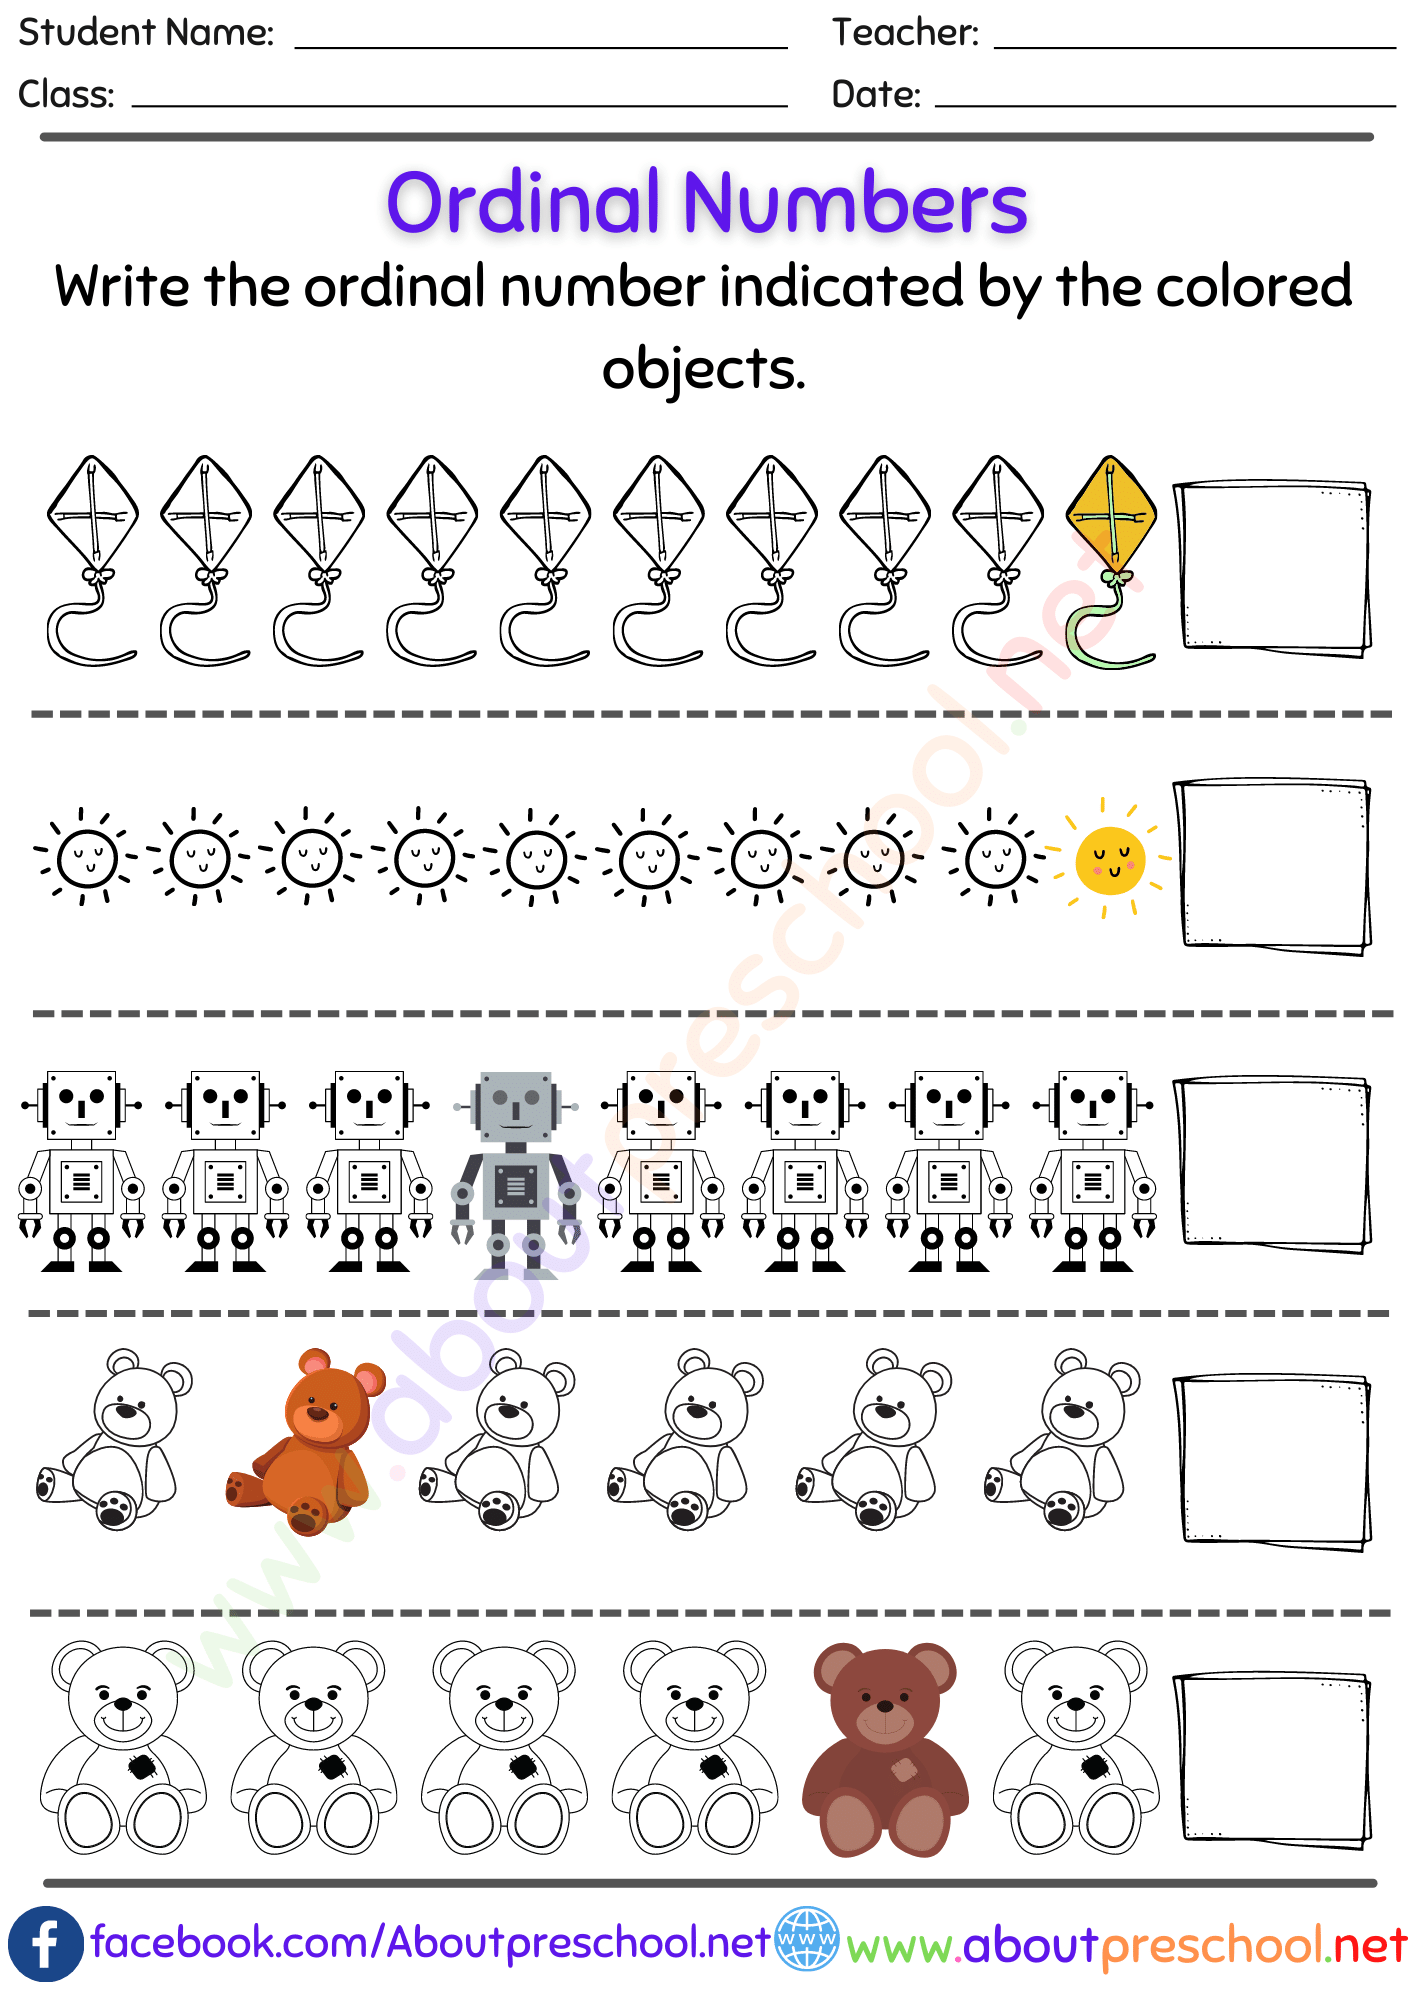 Kindergarten or Grade 1 Ordinal Numbers Worksheet 6